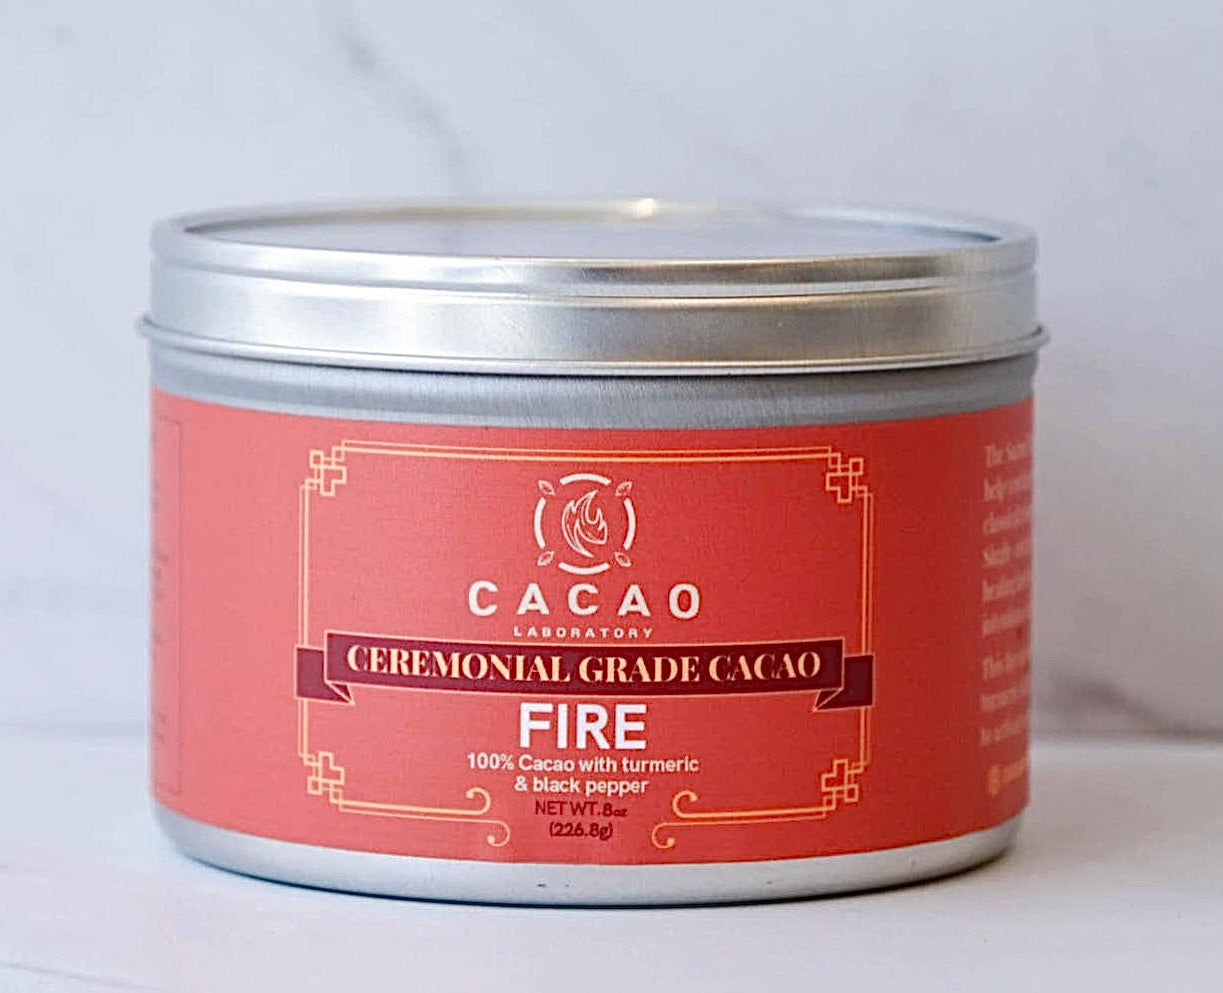 Ceremonial Grade Cacao (FIRE Element)